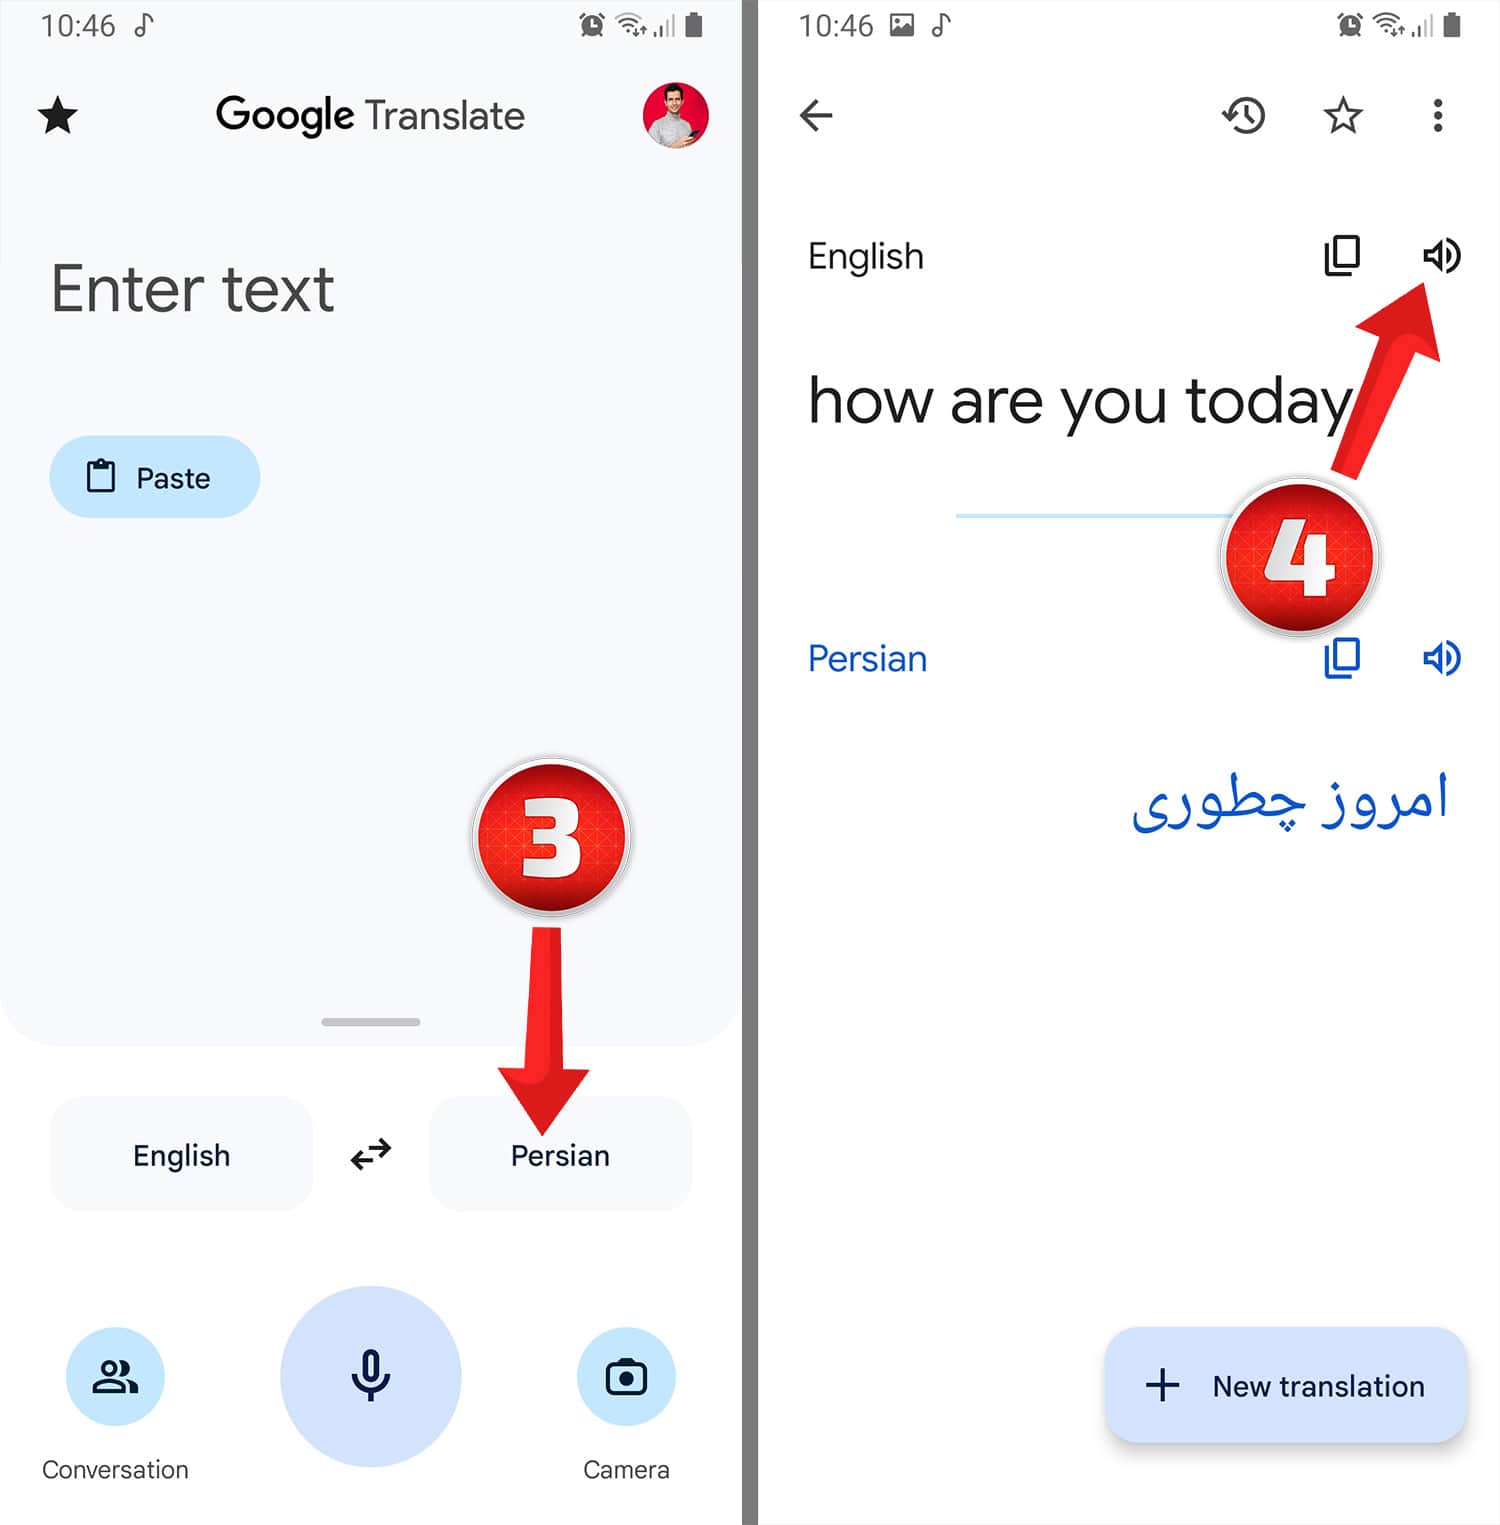 آموزش استفاده از مترجم گوگل ترنسلیت - Google translate